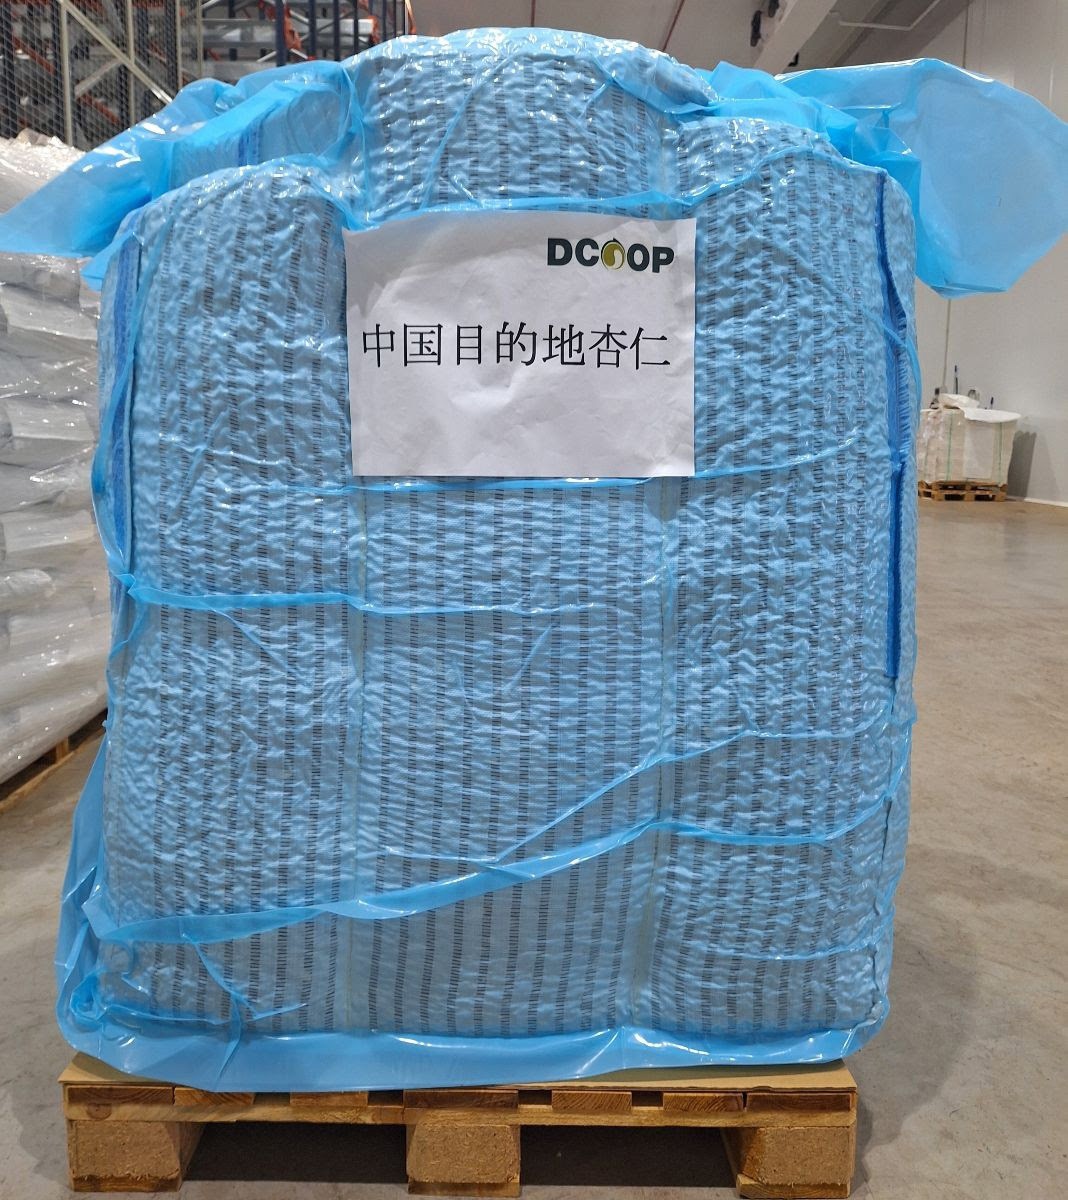 Dcoop enviará en enero y febrero los primeros 15 contenedores con 300 toneladas de almendra española a China